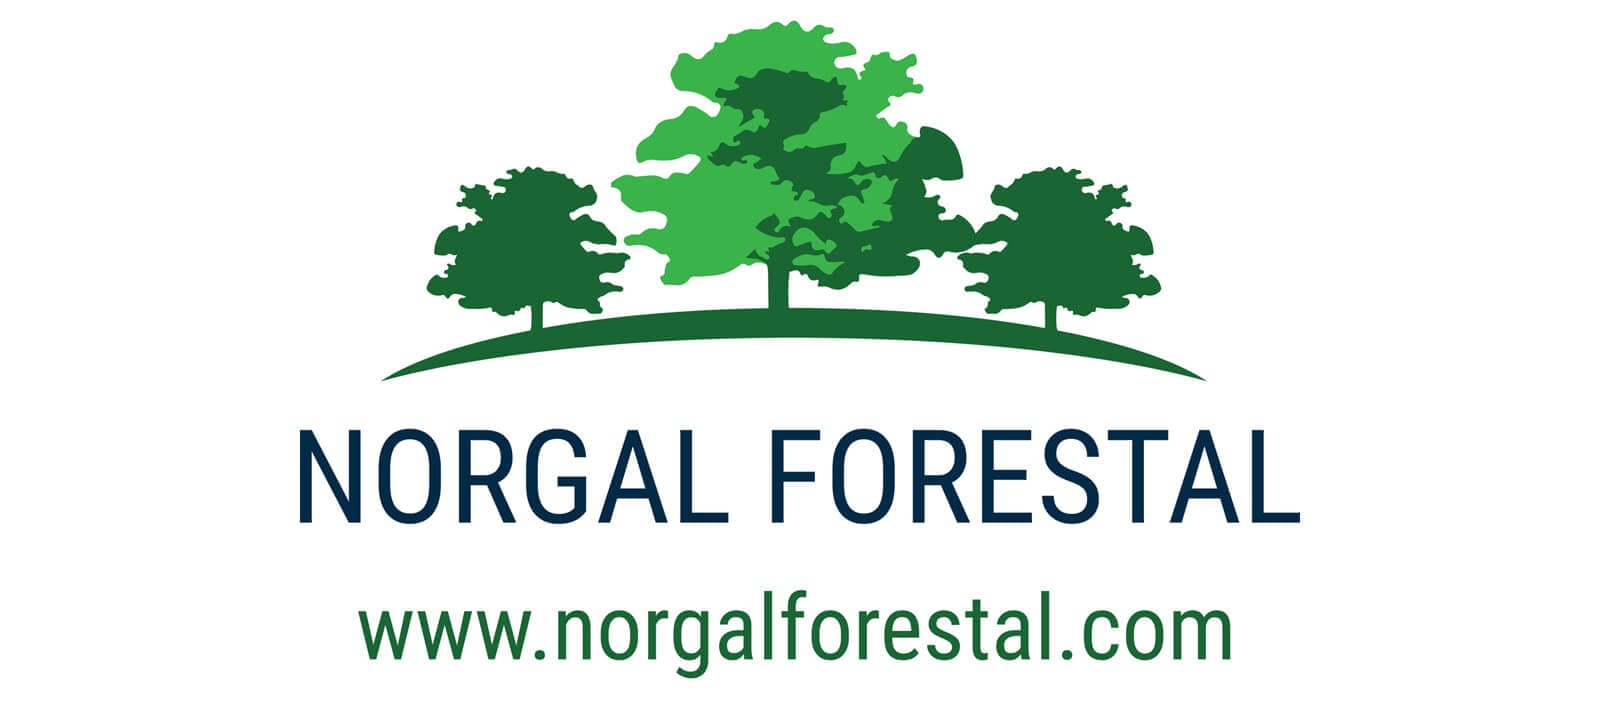 Norgal Forestal, comrpra y venta de madera, desbroces y plantaciones.